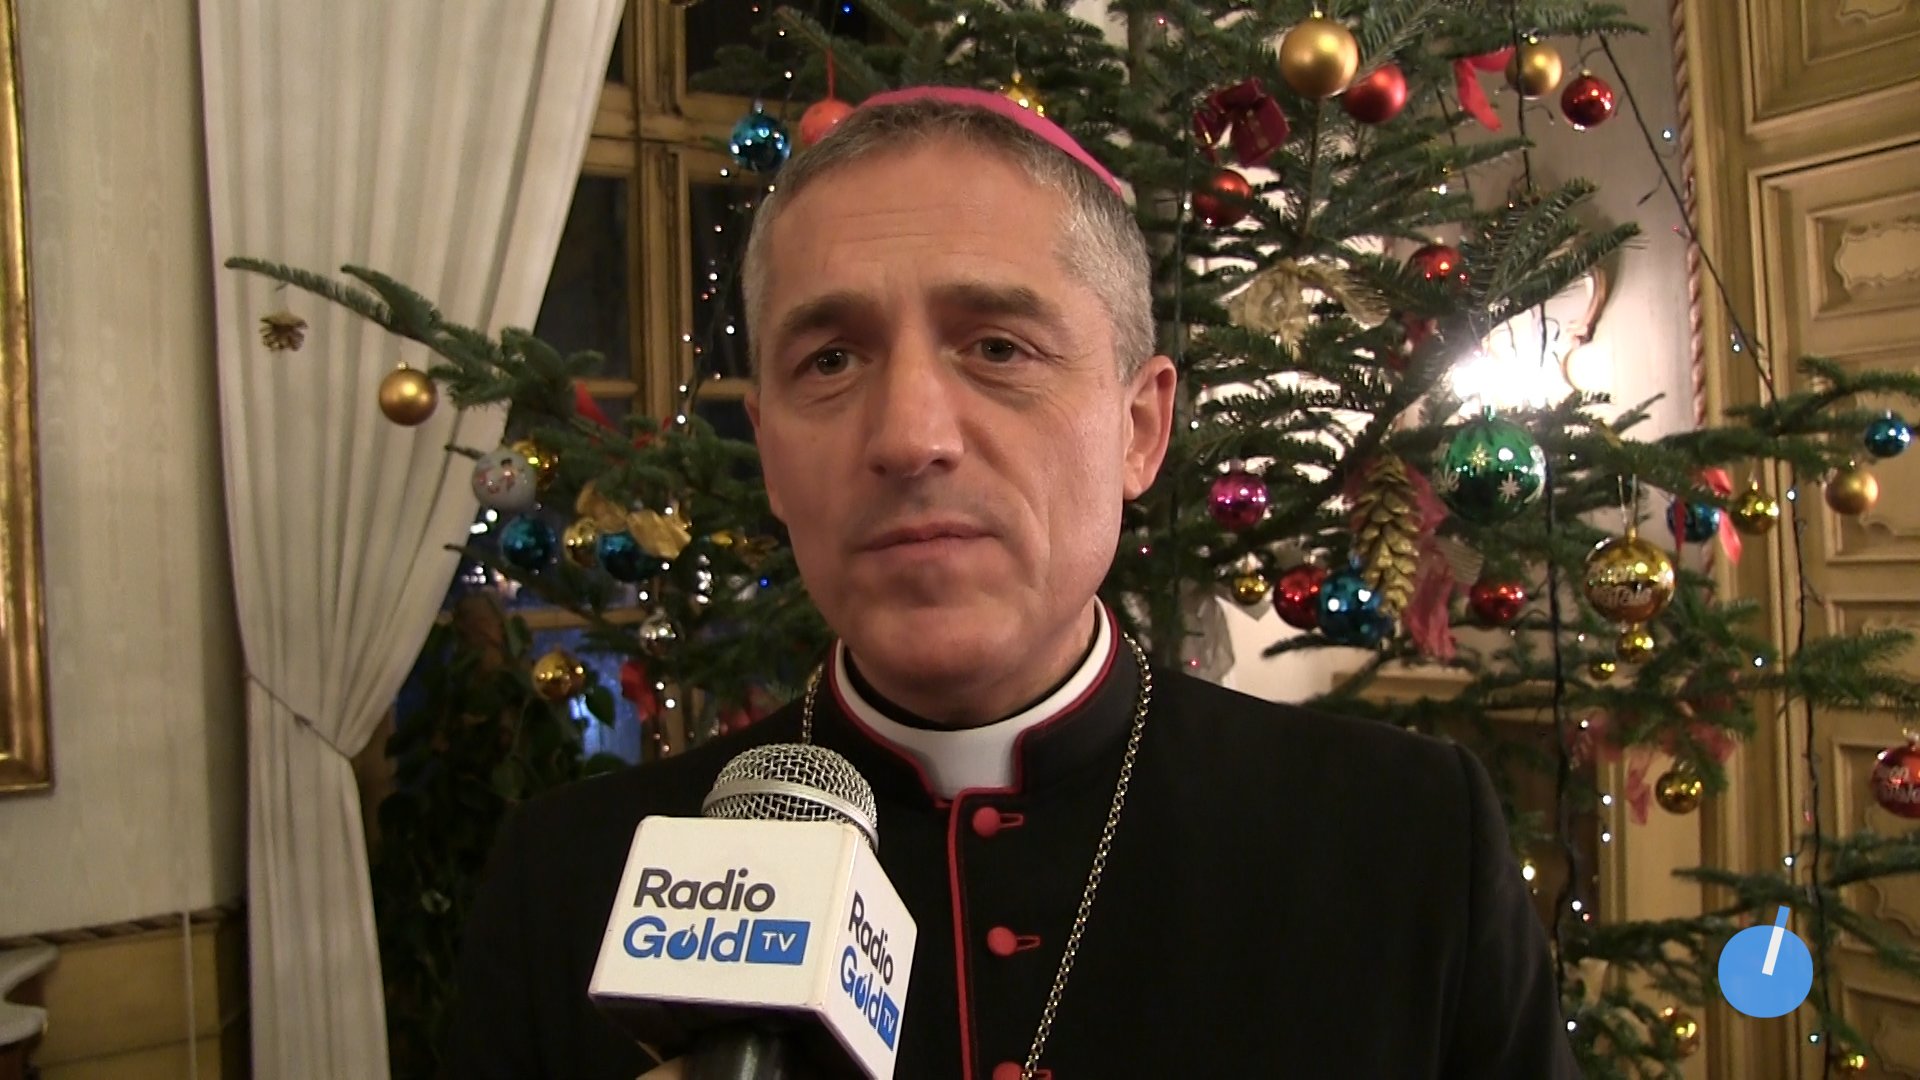 Il vescovo di Tortona Vittorio Viola: “che il Natale rinnovi il nostro incontro col Signore”